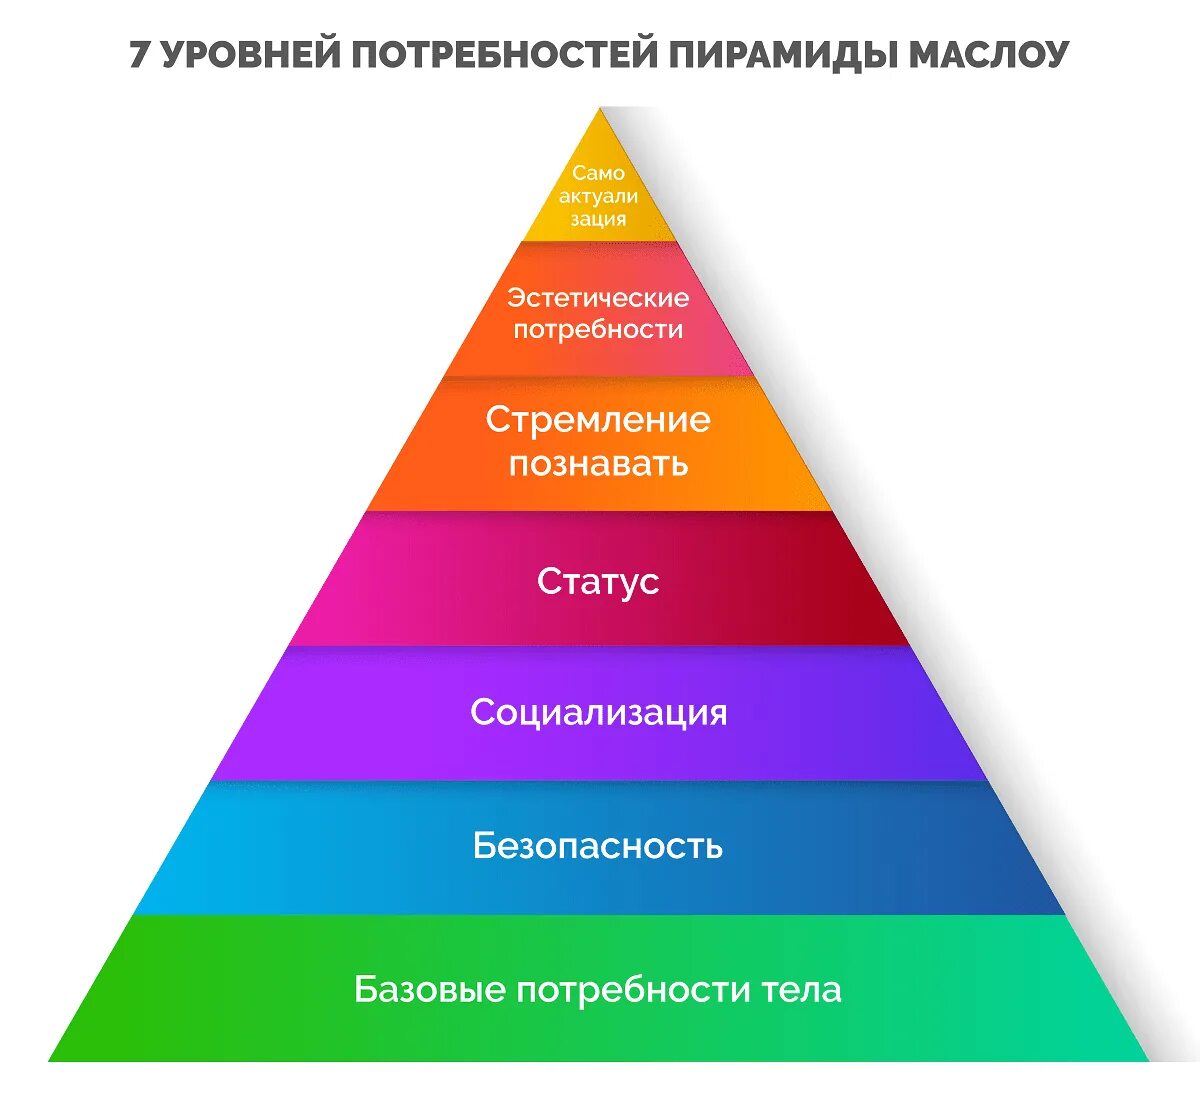 5 Маслоу. Пирамида потребностей Маслоу. Пирамида потребностей Маслоу 7 уровней. Пирамида Абрахама Маслоу 5 ступеней. Потребности были максимально